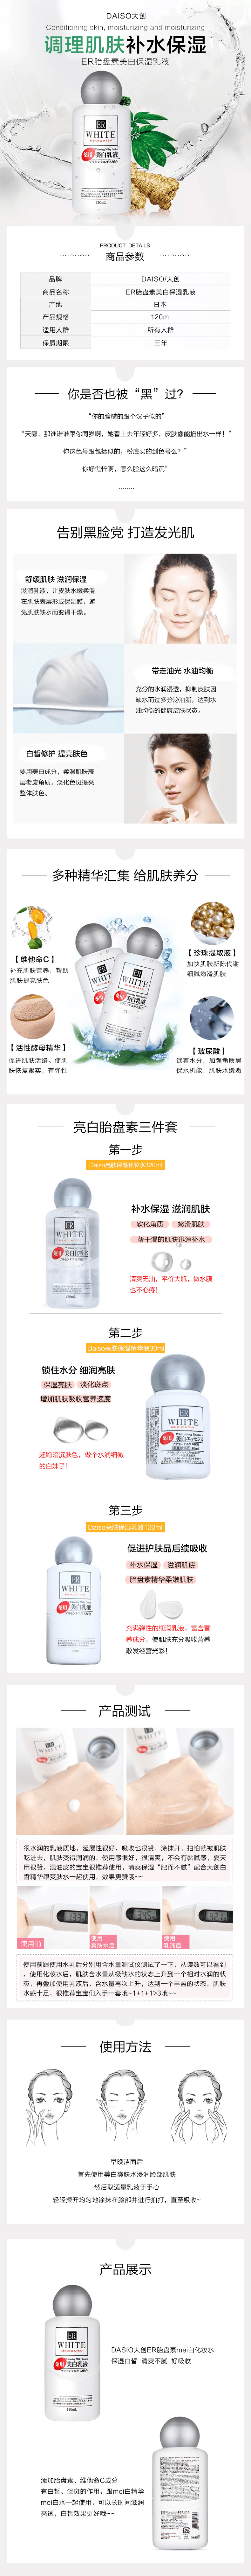 【日本直效郵件】 DAISO 大創藥用美白乳液 120ml